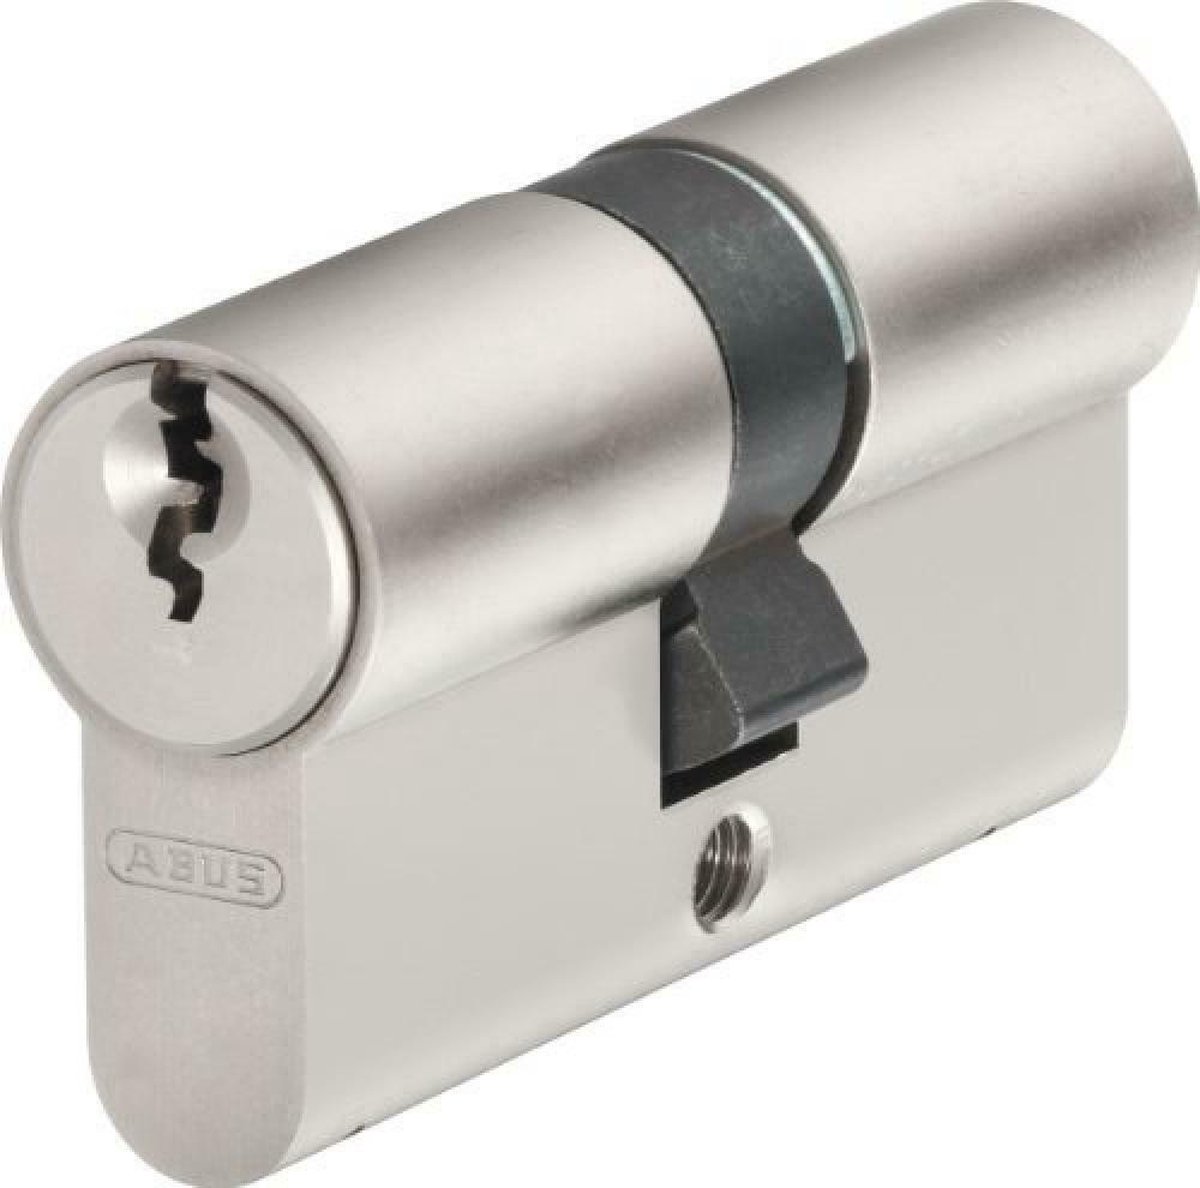 ABUS deurcilinder met profielsleutel D6XNP 40/40 Inclusief 5 sleutels code card door cylinder with profile keys including 5 key code card - ABUS